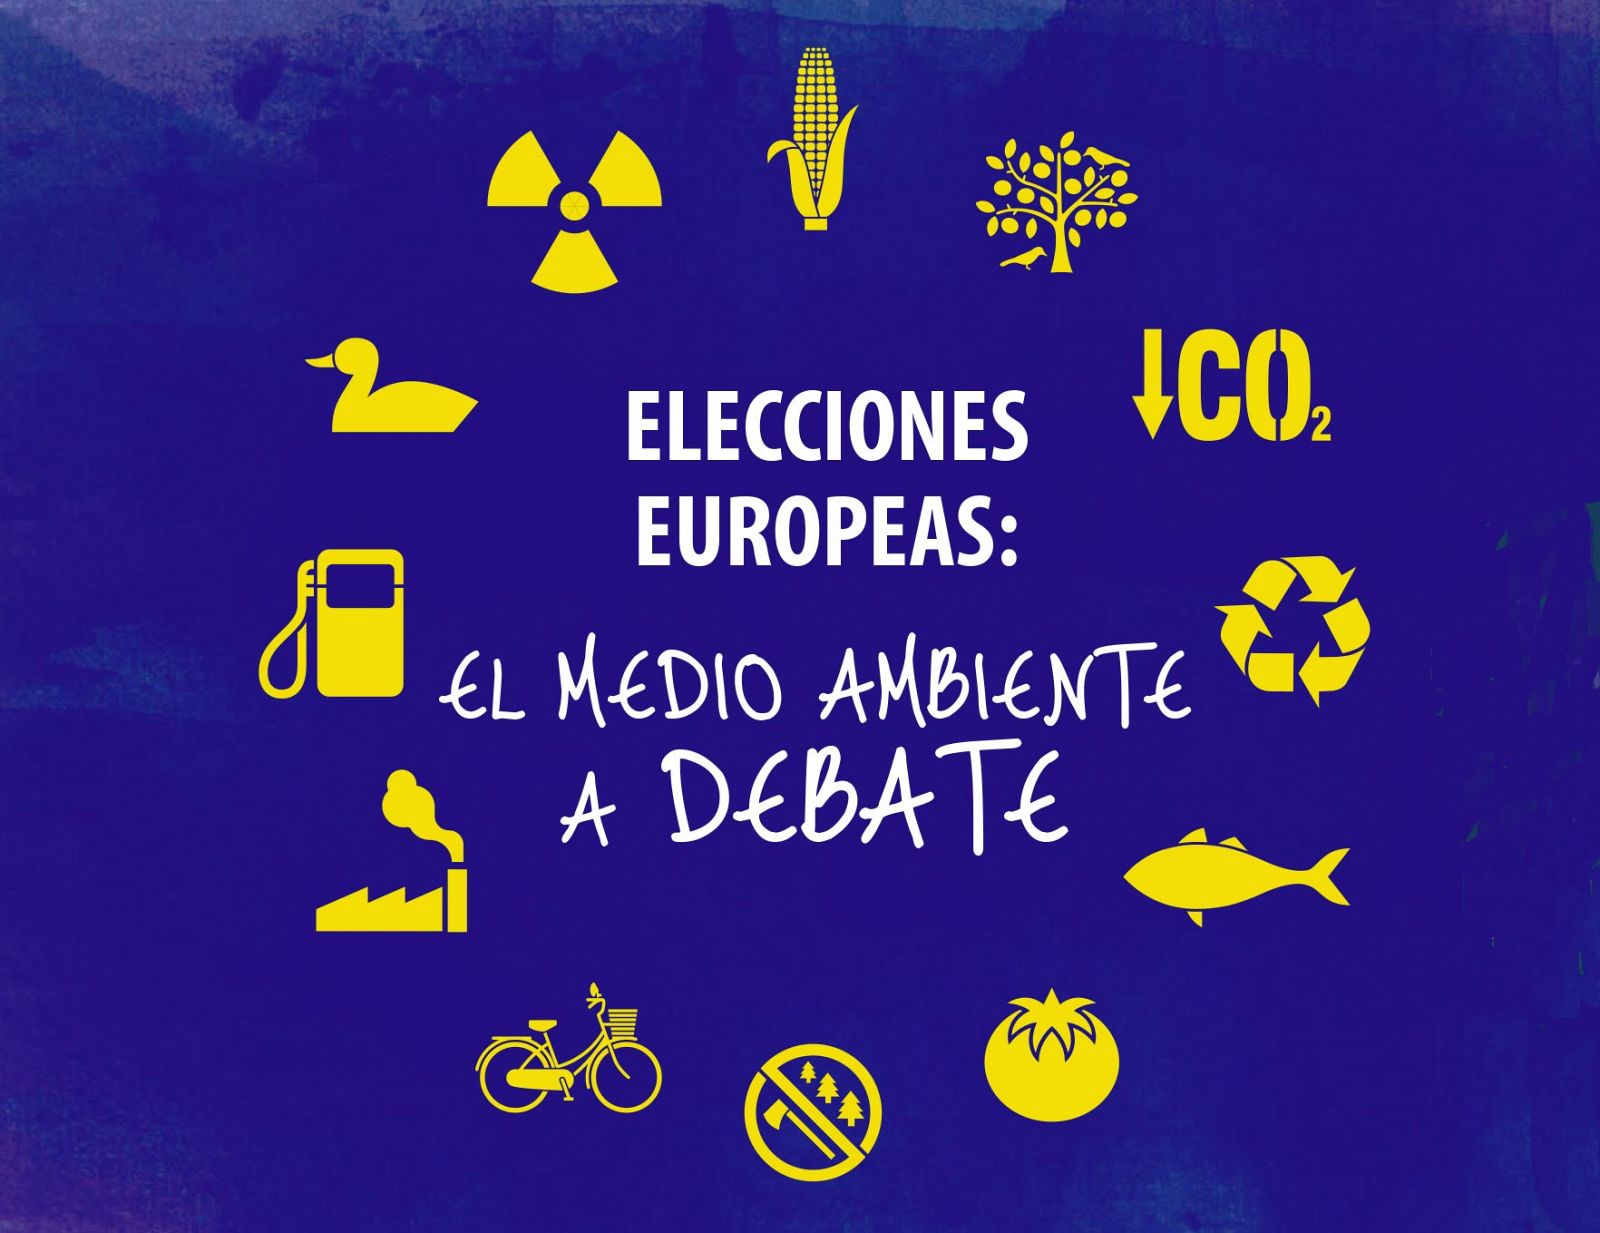 Imagen del debate sobre medio ambiente de cara a las elecciones europeas.